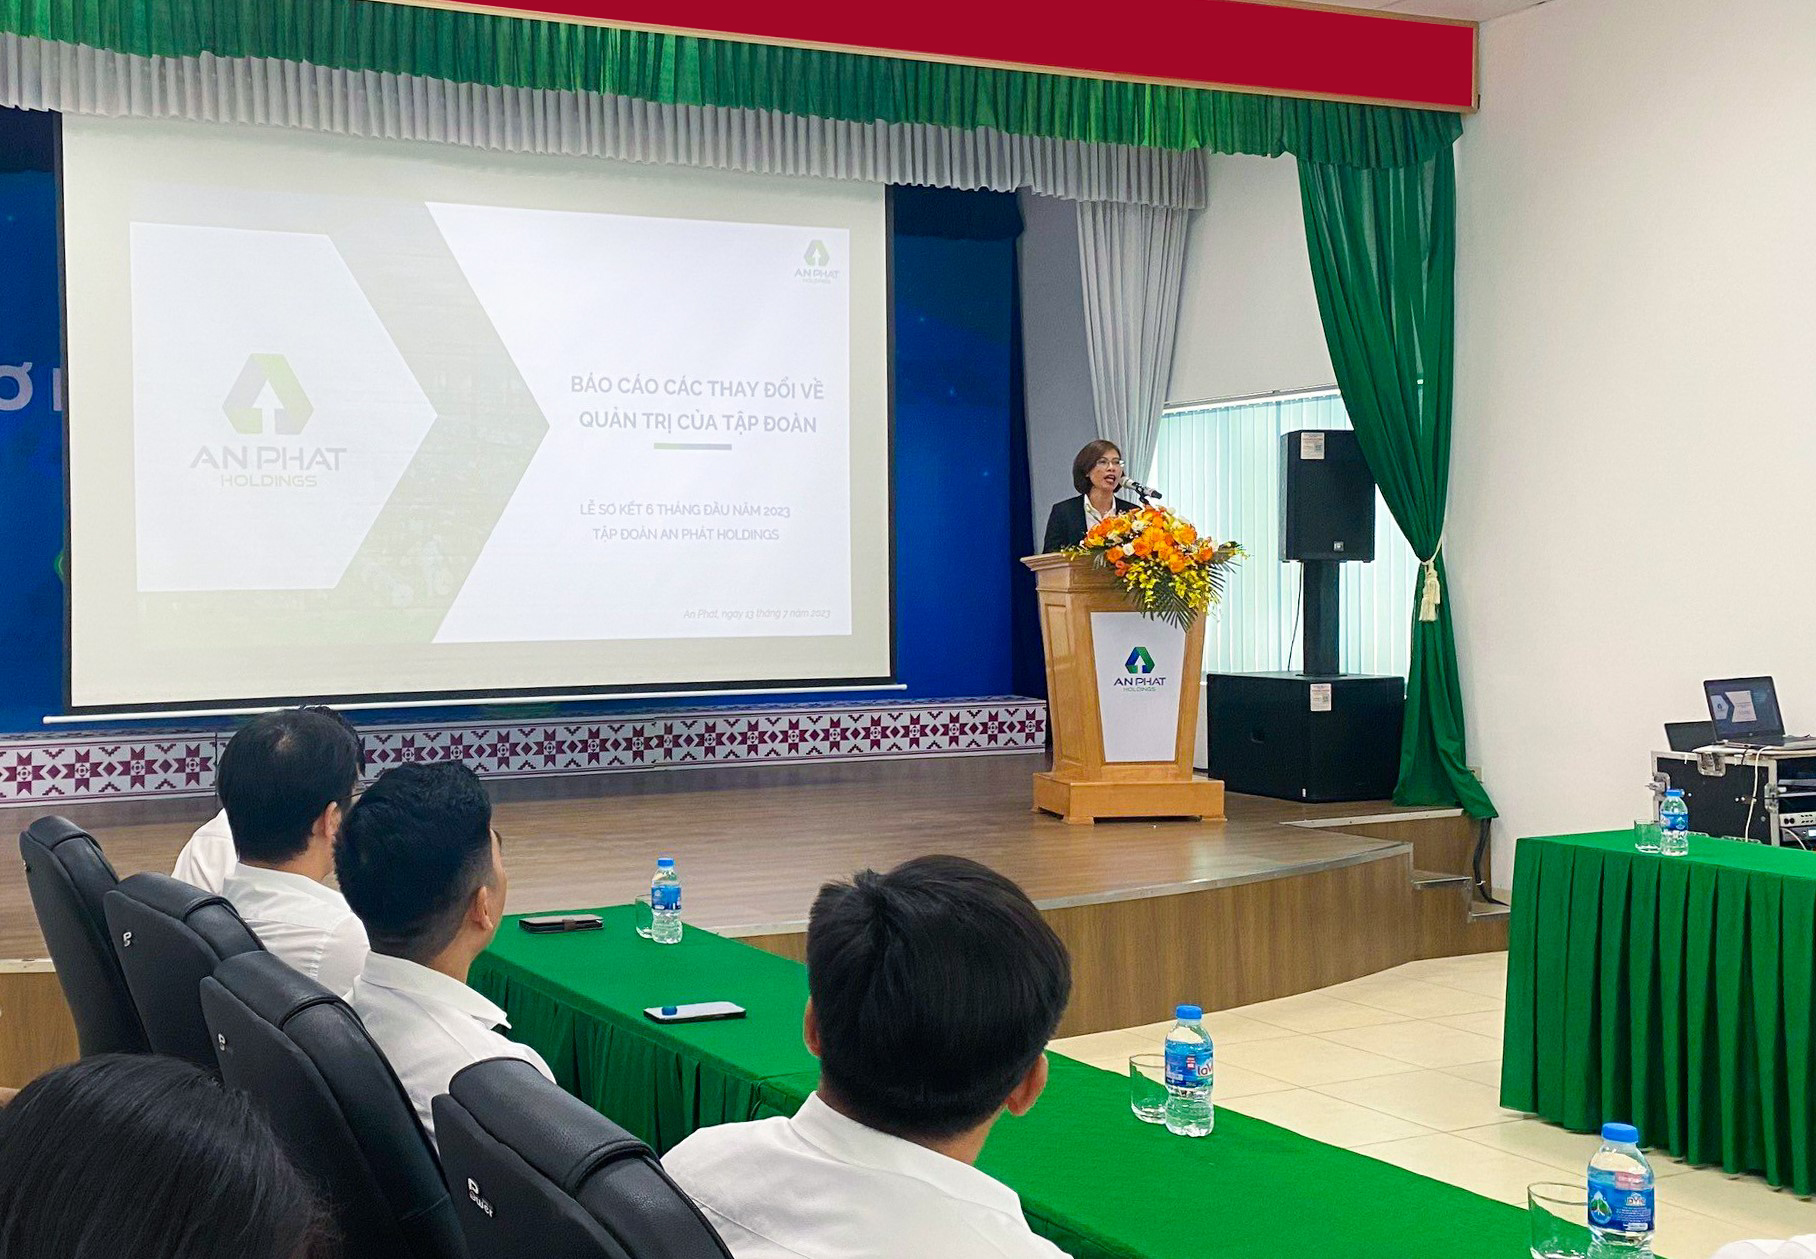 Bà Nguyễn Thị Tiện – Phó Tổng Giám đốc thường trực APH, trình bày Báo cáo các thay đổi về quản trị